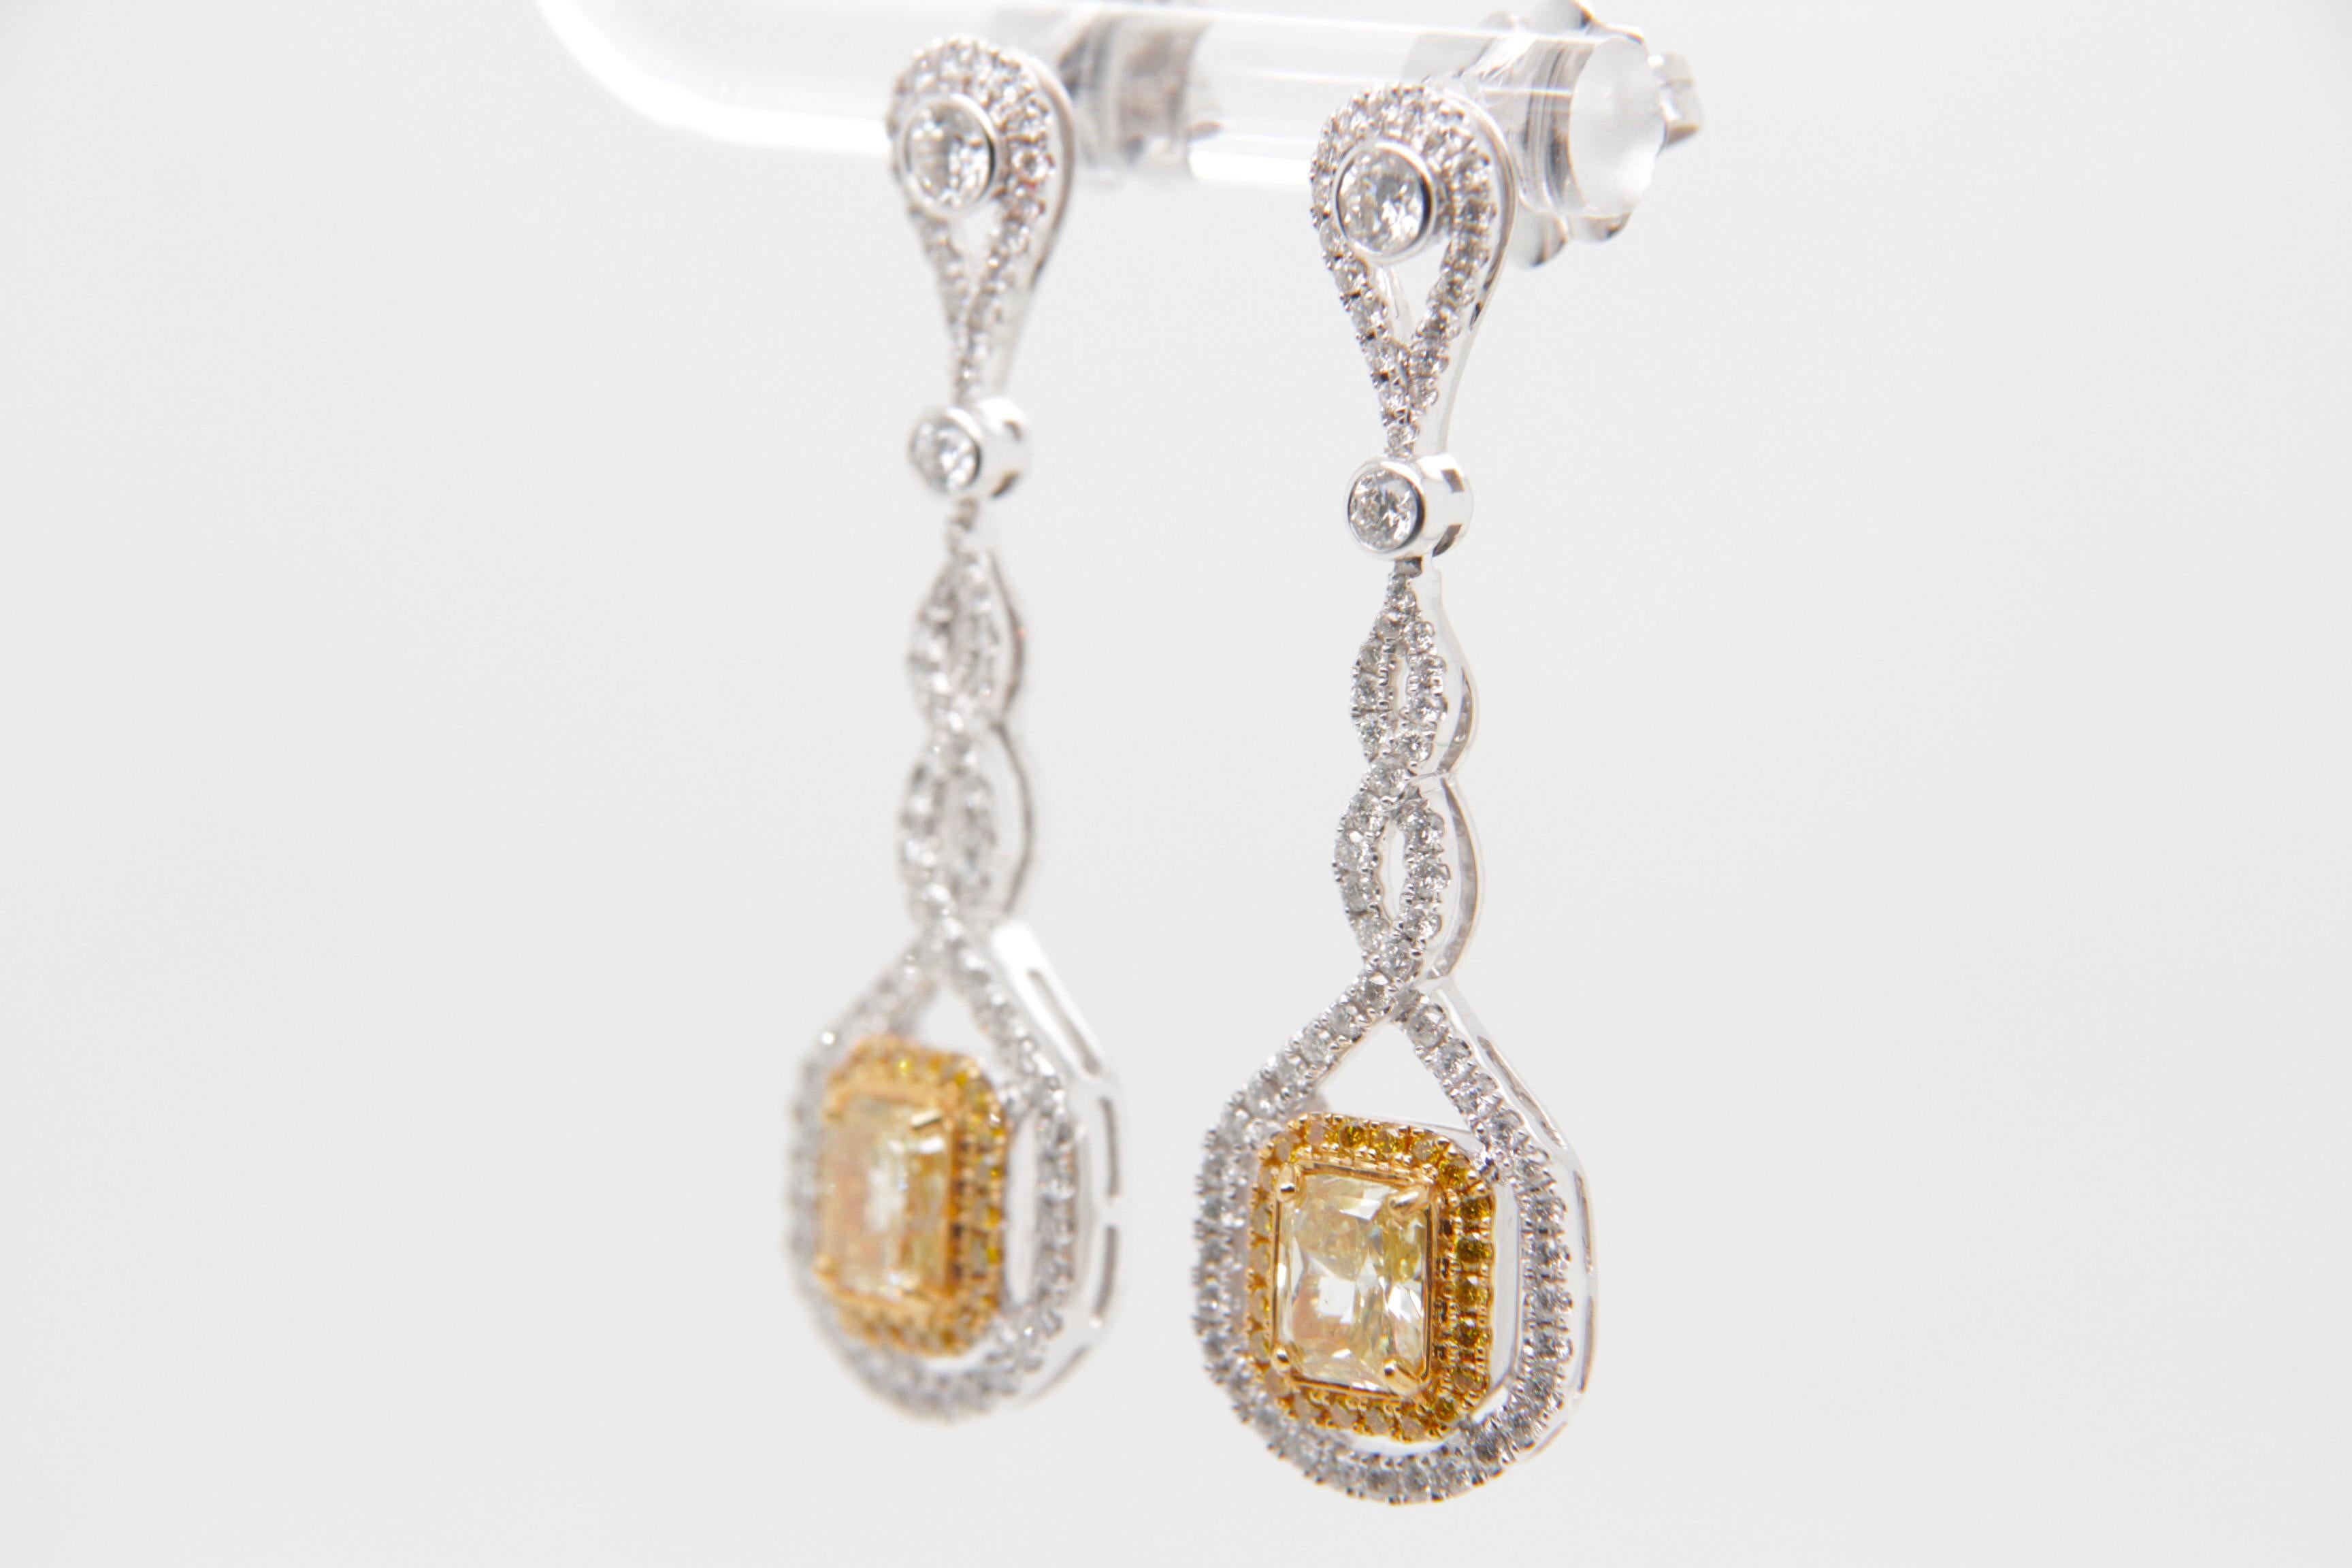 Diese prächtigen Diamantohrringe von REWA Jewelry sind ein Beweis für das Engagement der Marke für exquisite Handwerkskunst und zeitlose Schönheit.

Das Herzstück dieser Ohrringe sind zwei strahlende Diamanten mit einem Gesamtgewicht von 1,53 Karat.